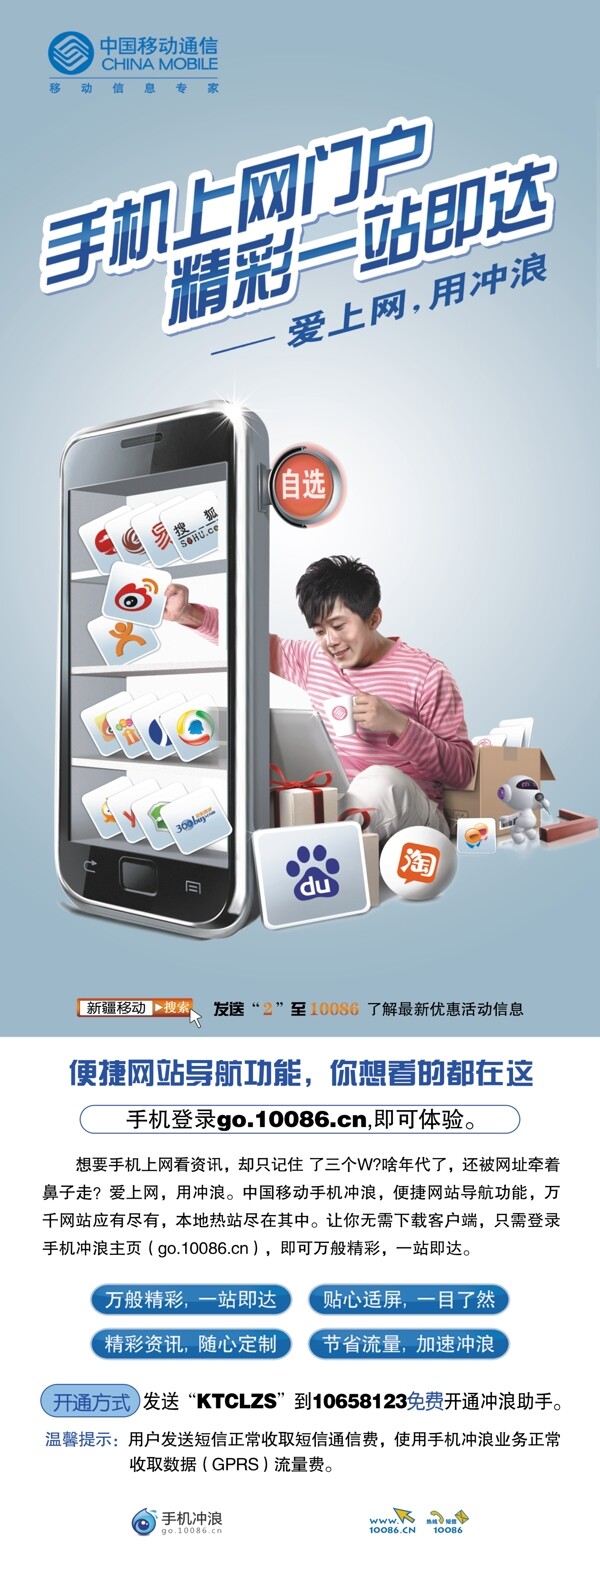 中国移动手机上网图片